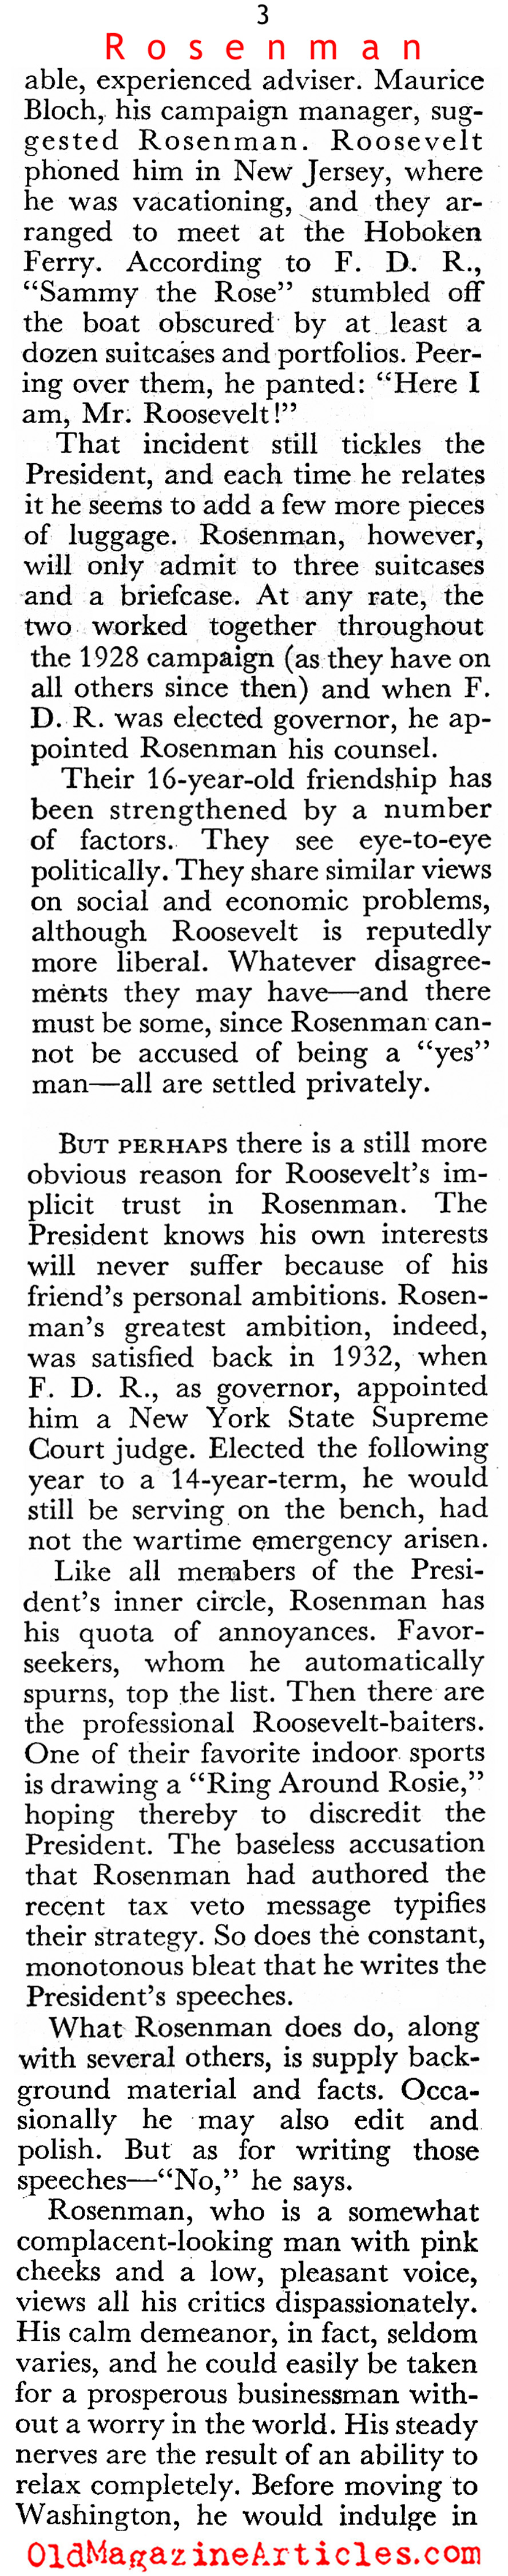 Sam Rosenman: FDR's Right Arm (Coronet Magazine, 1944)